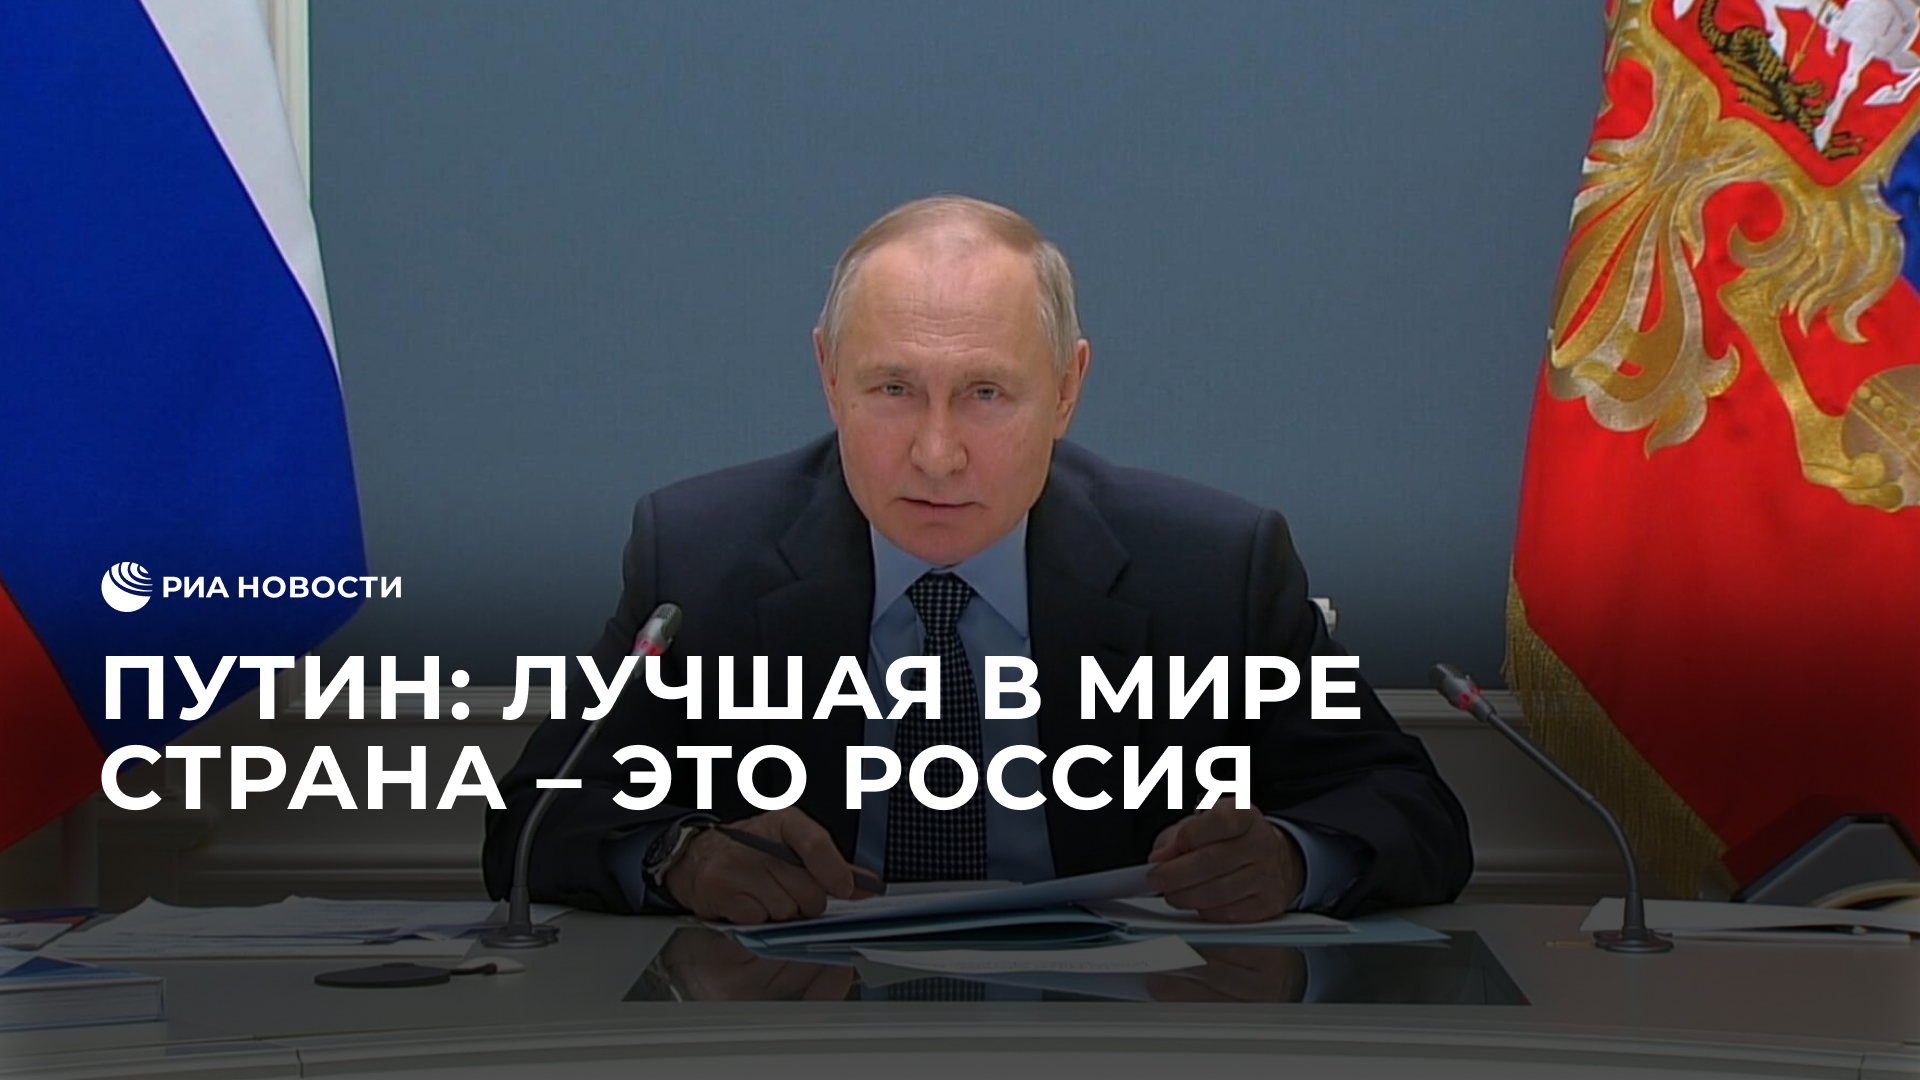 Путин: лучшая в мире страна – это Россия